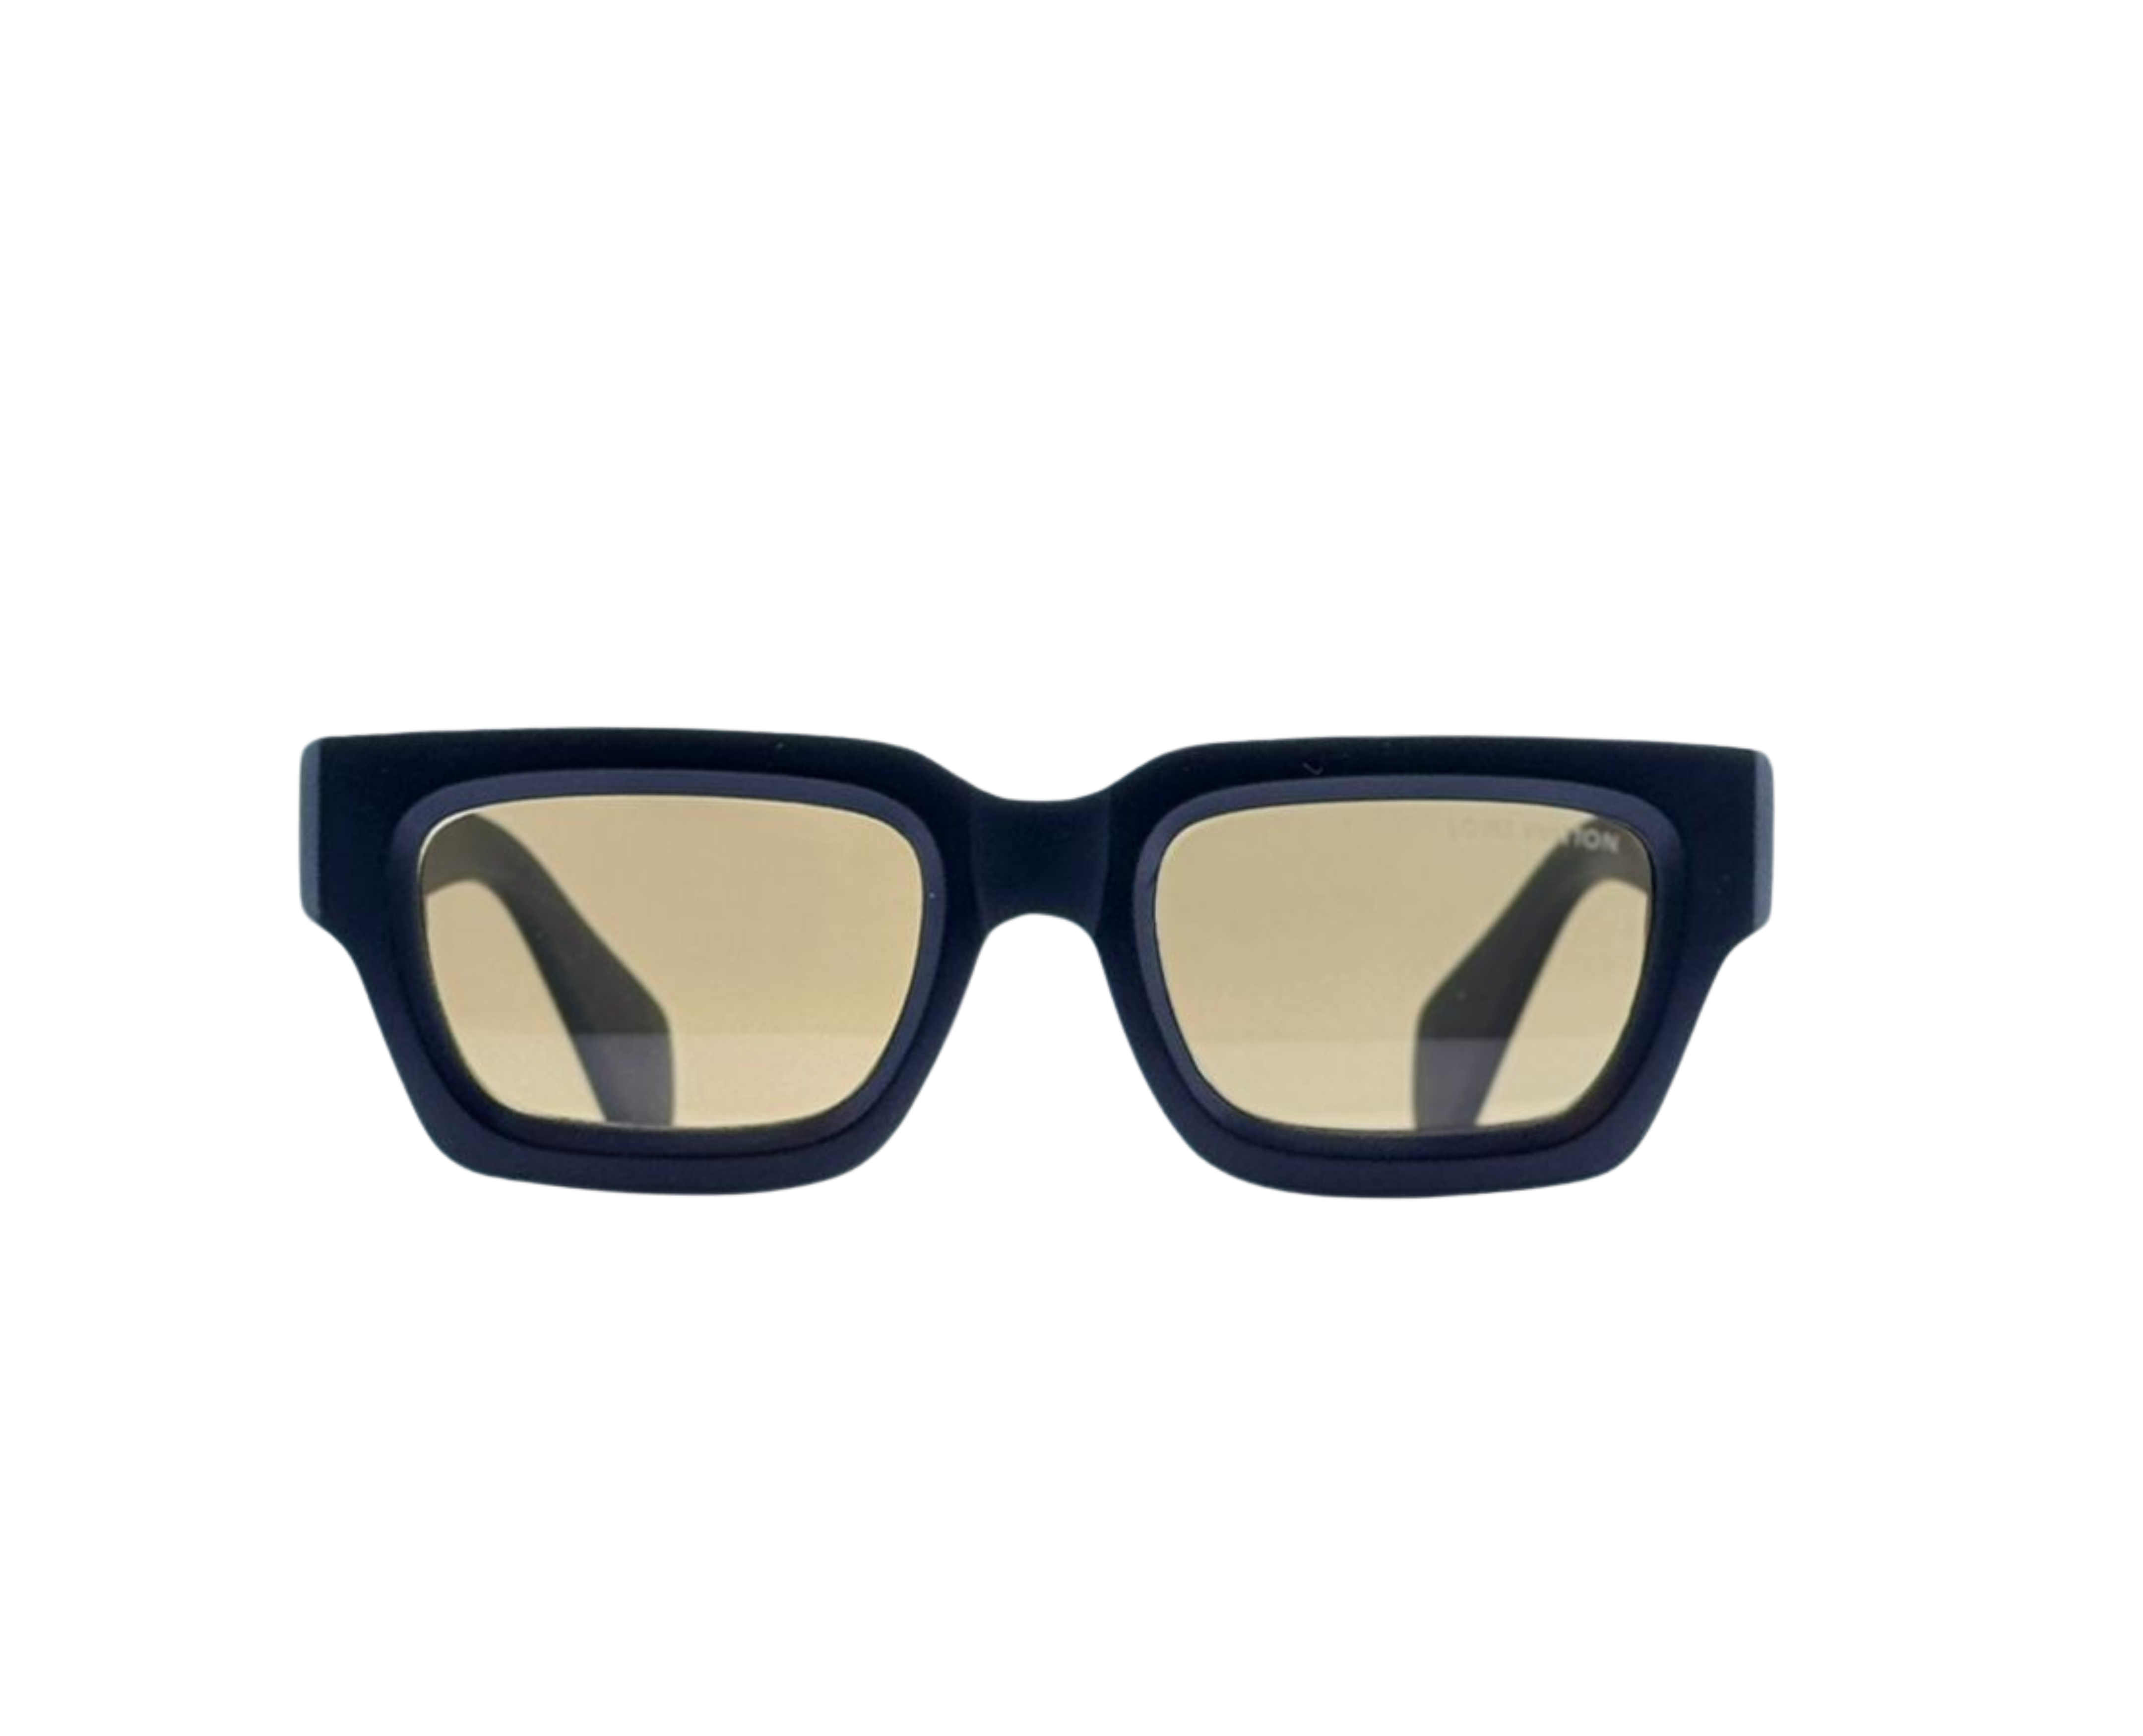 NS Luxury - 067 - Black - Sunglasses